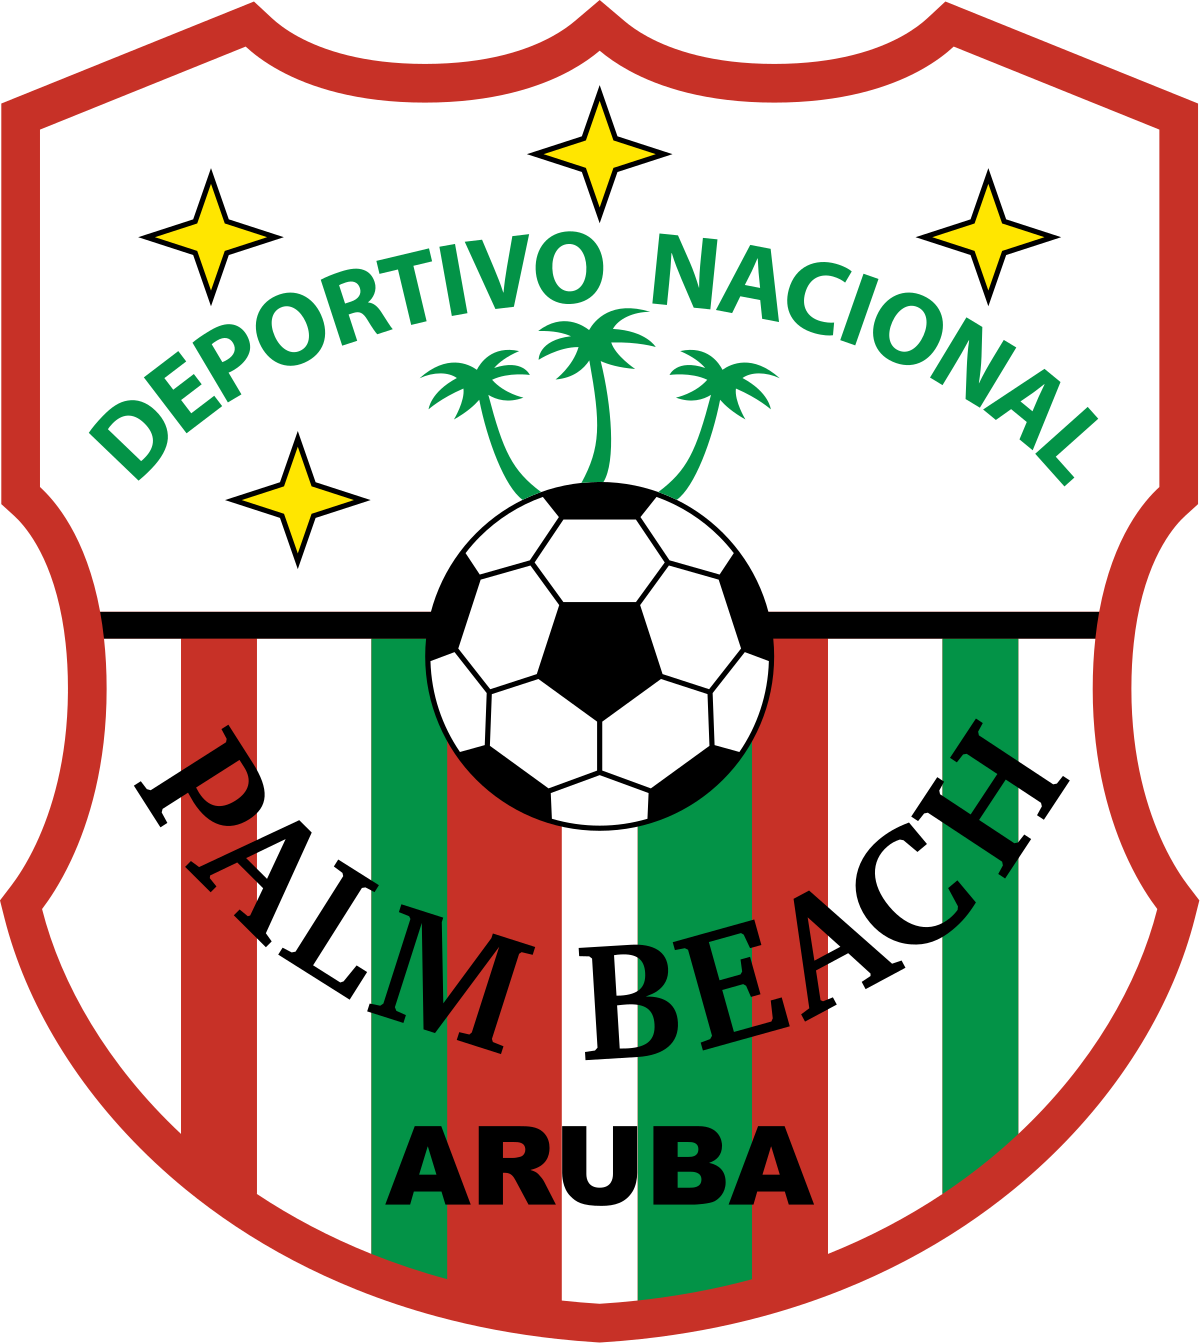 SV Deporativo Nacional Team Logo